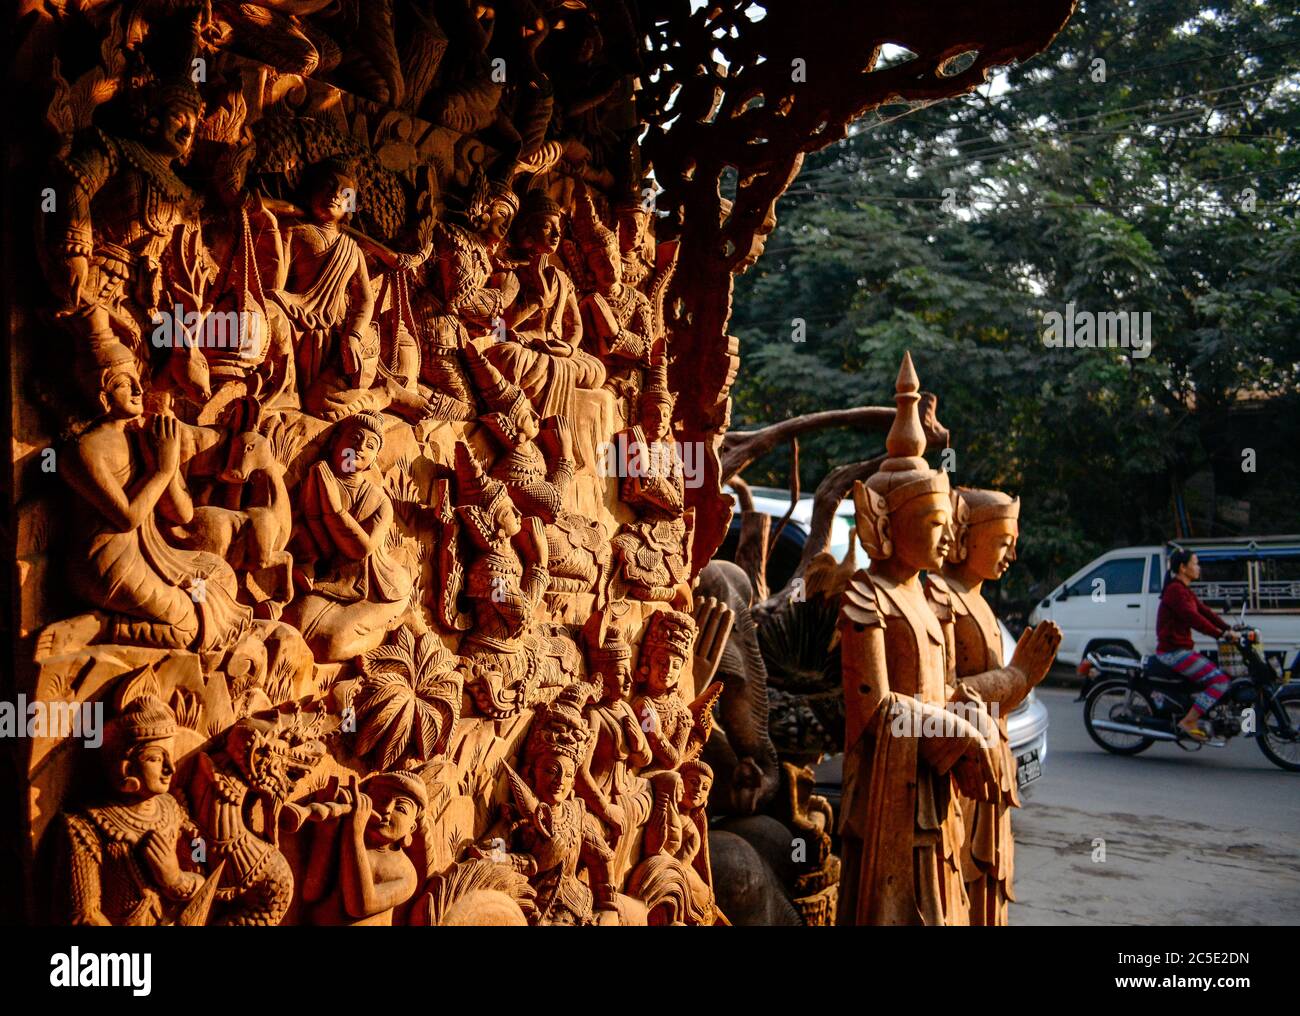 Statue di legno di Buddha a Mandalay, Myanmar. Buddha con una varietà di movimenti scolpiti su legno per la vendita. Foto Stock